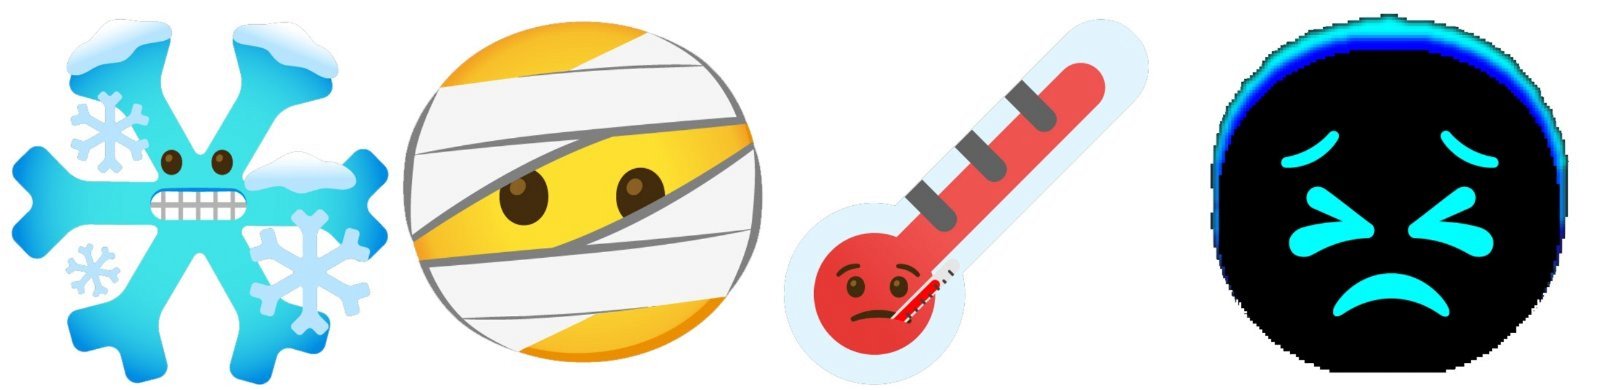 emojis combinados de Gboard 4